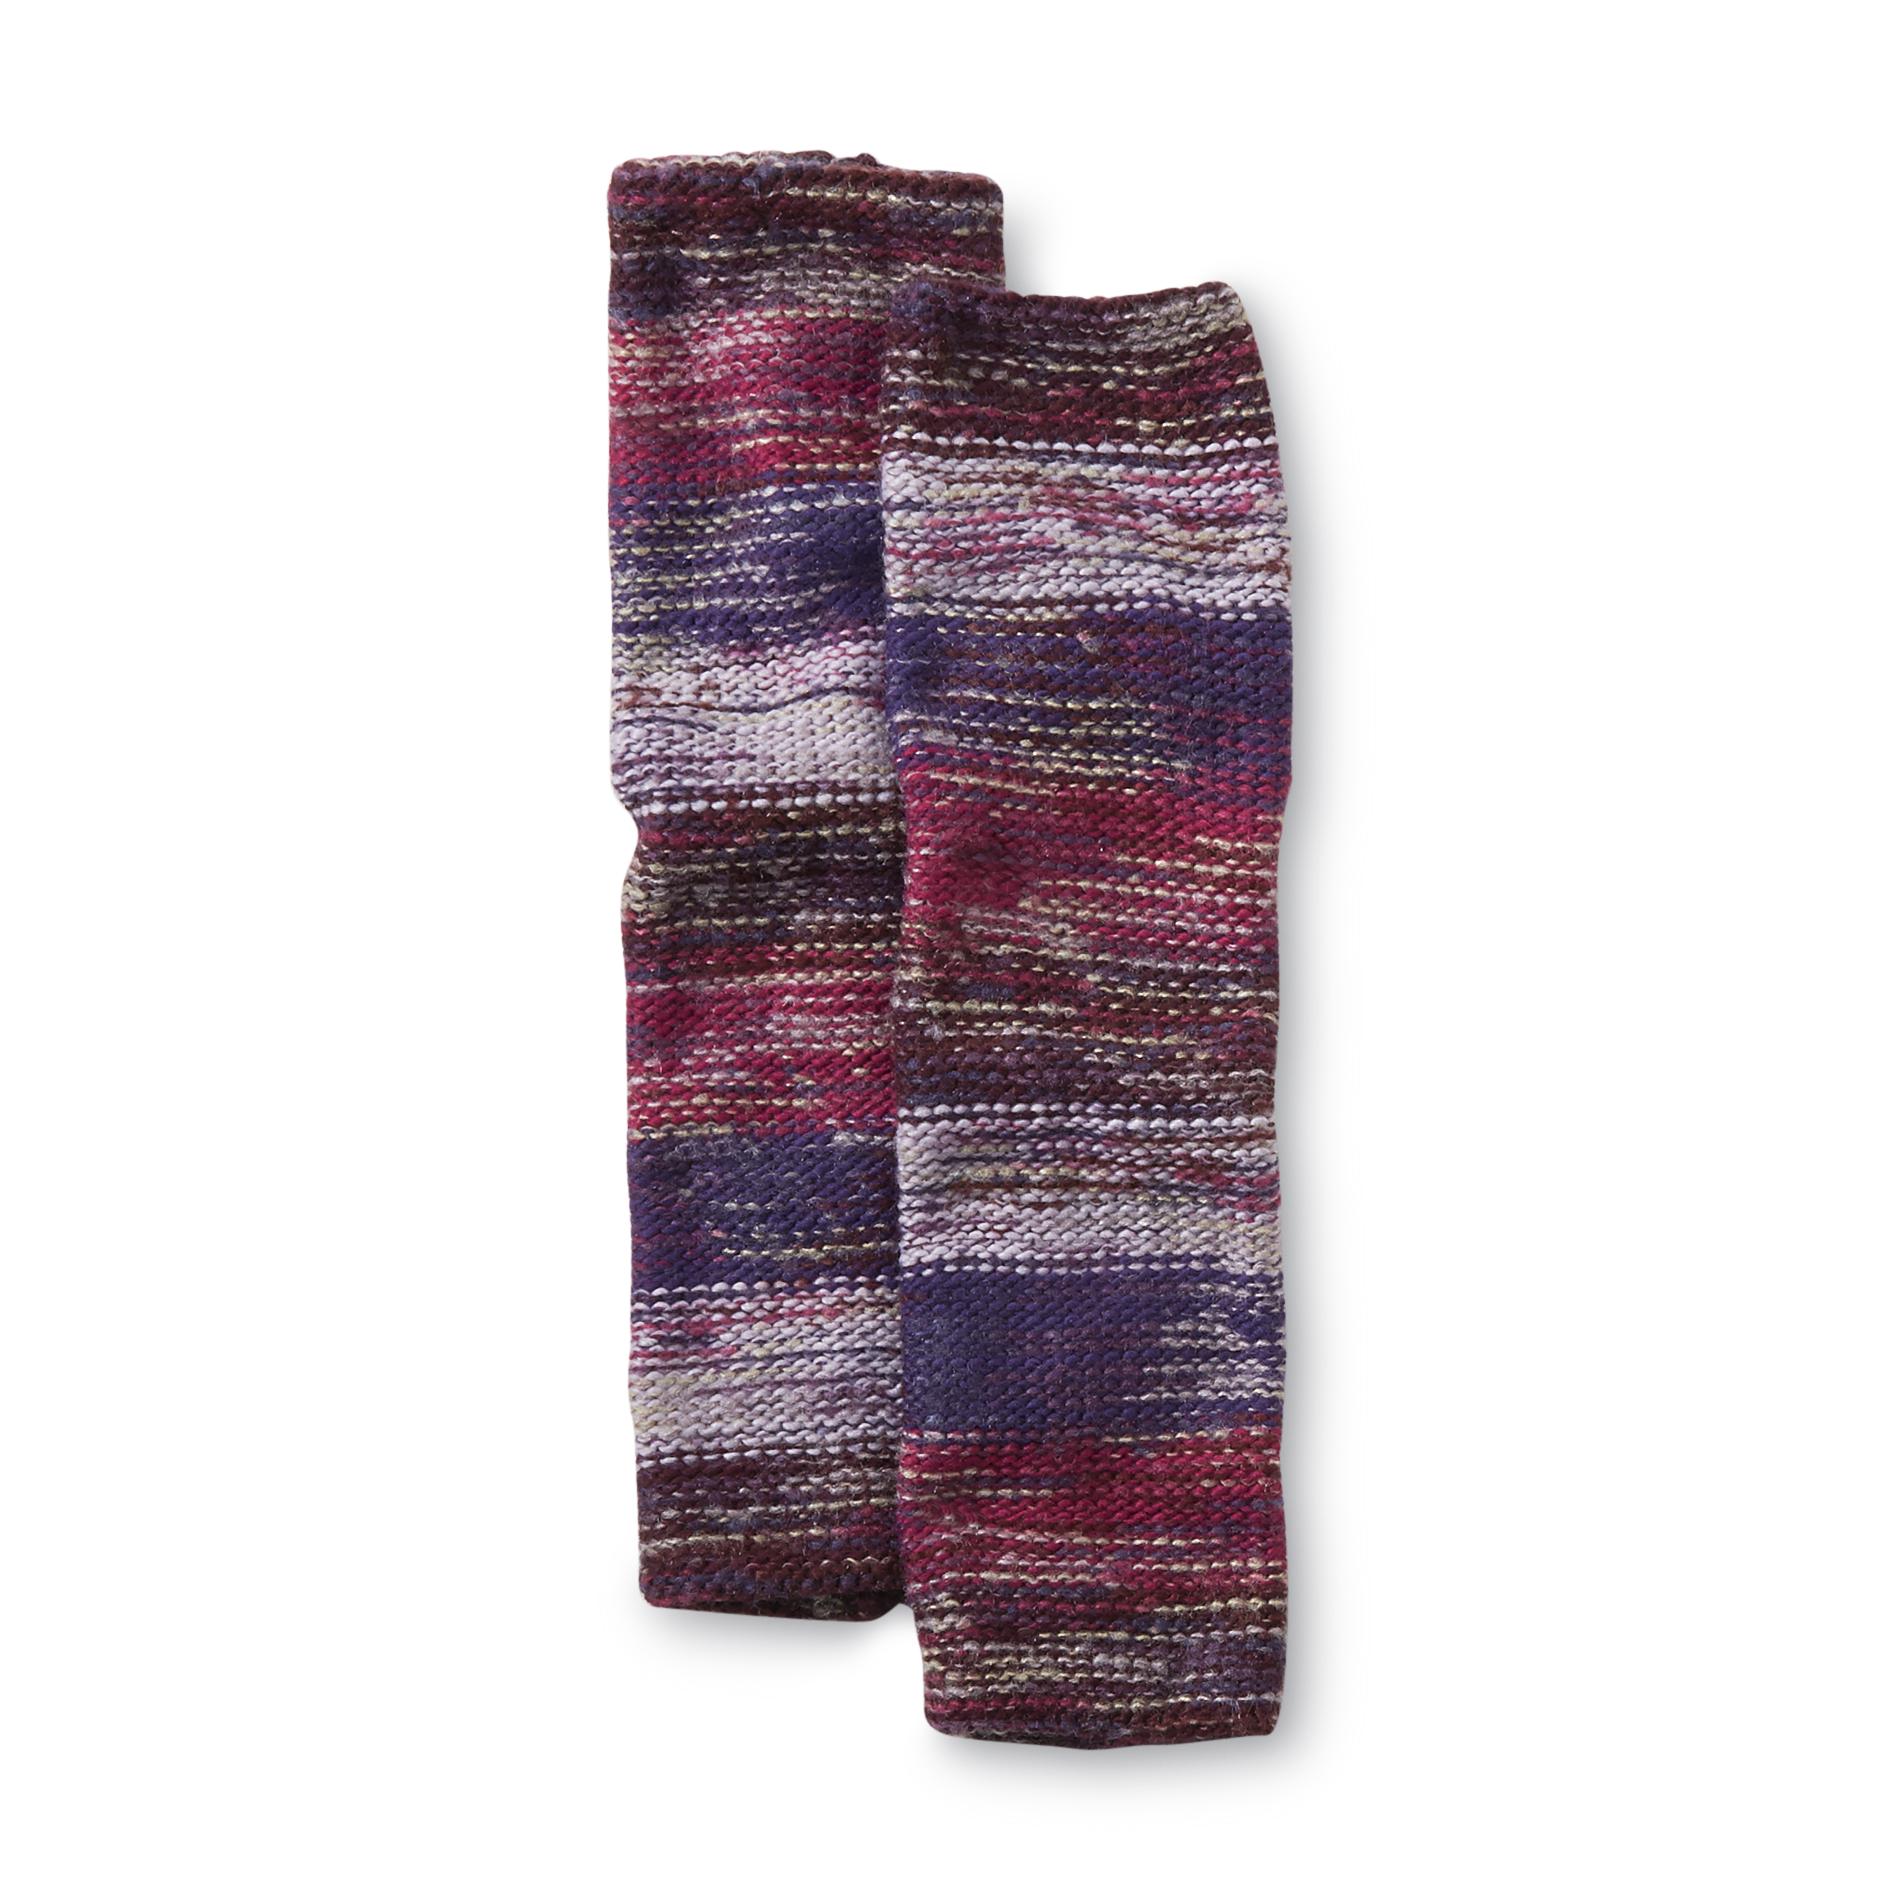 Joe Boxer Women's Knit Leg Warmers - Space Dye